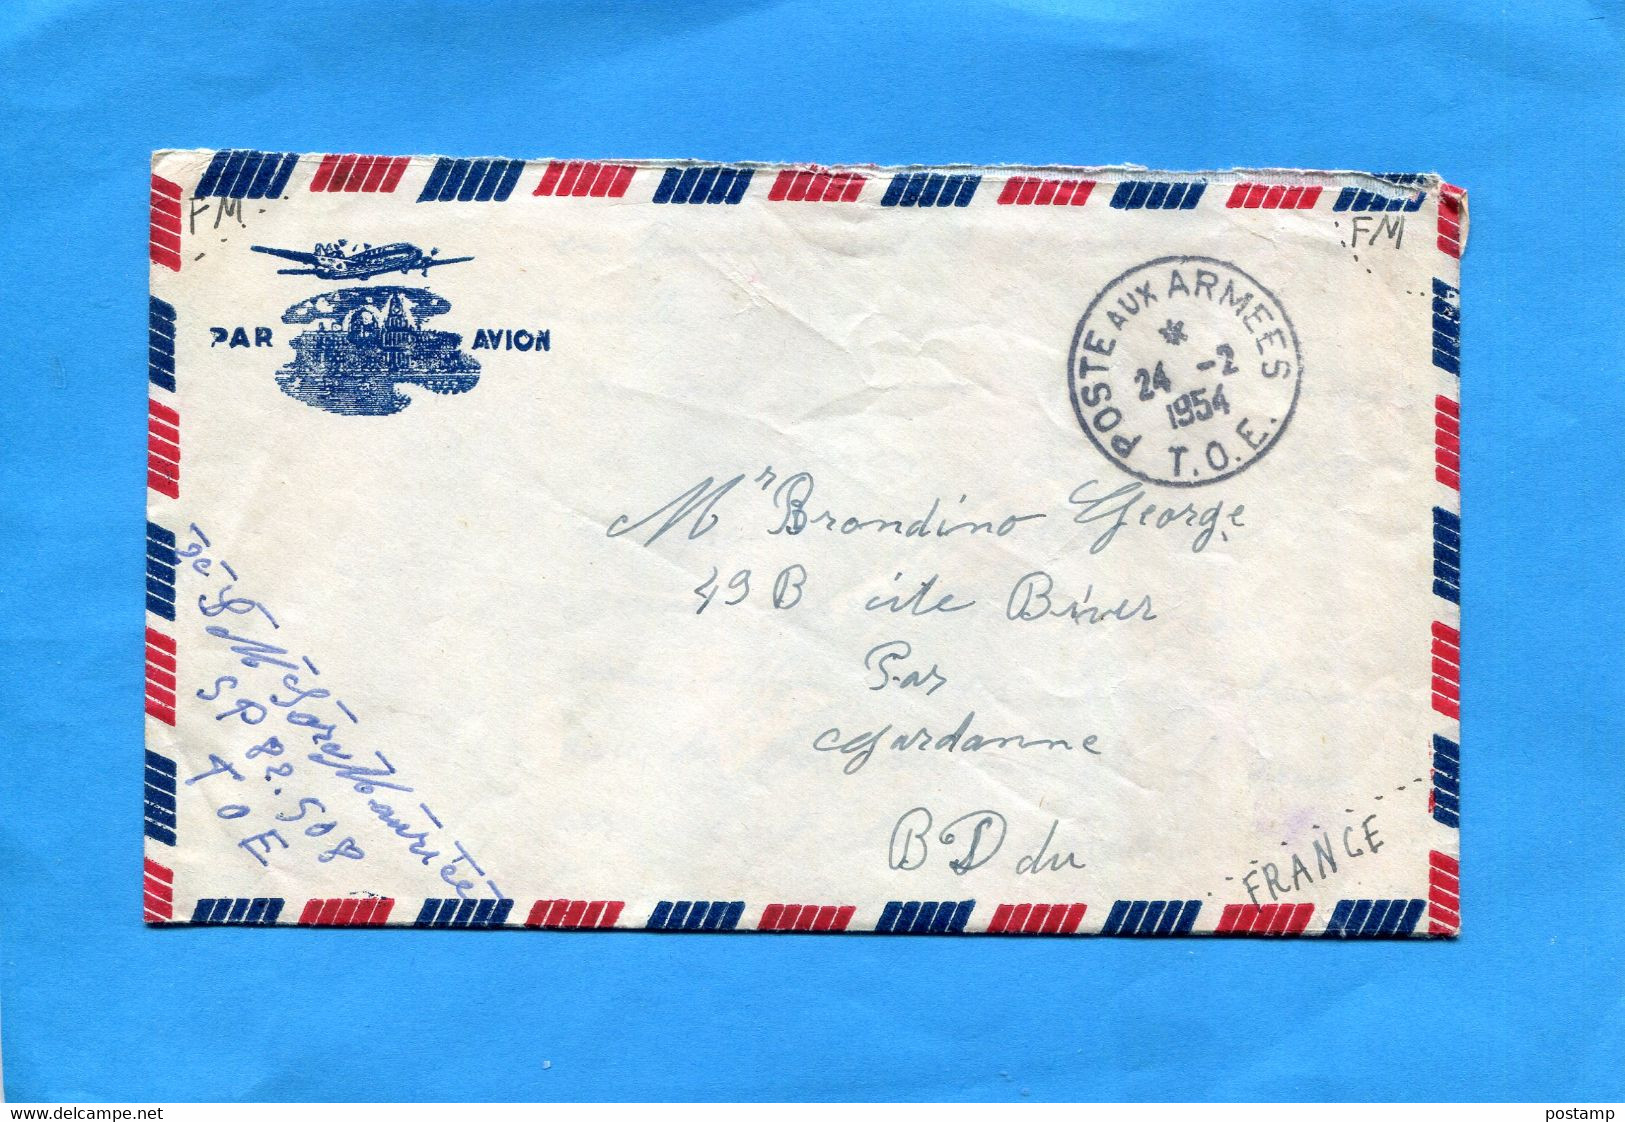 MARCOPHILIE Guerre D'indochine-lettre Cad Poste Aux Armées1954 T O E-expédiée Par SP82508 - War Of Indo-China / Vietnam